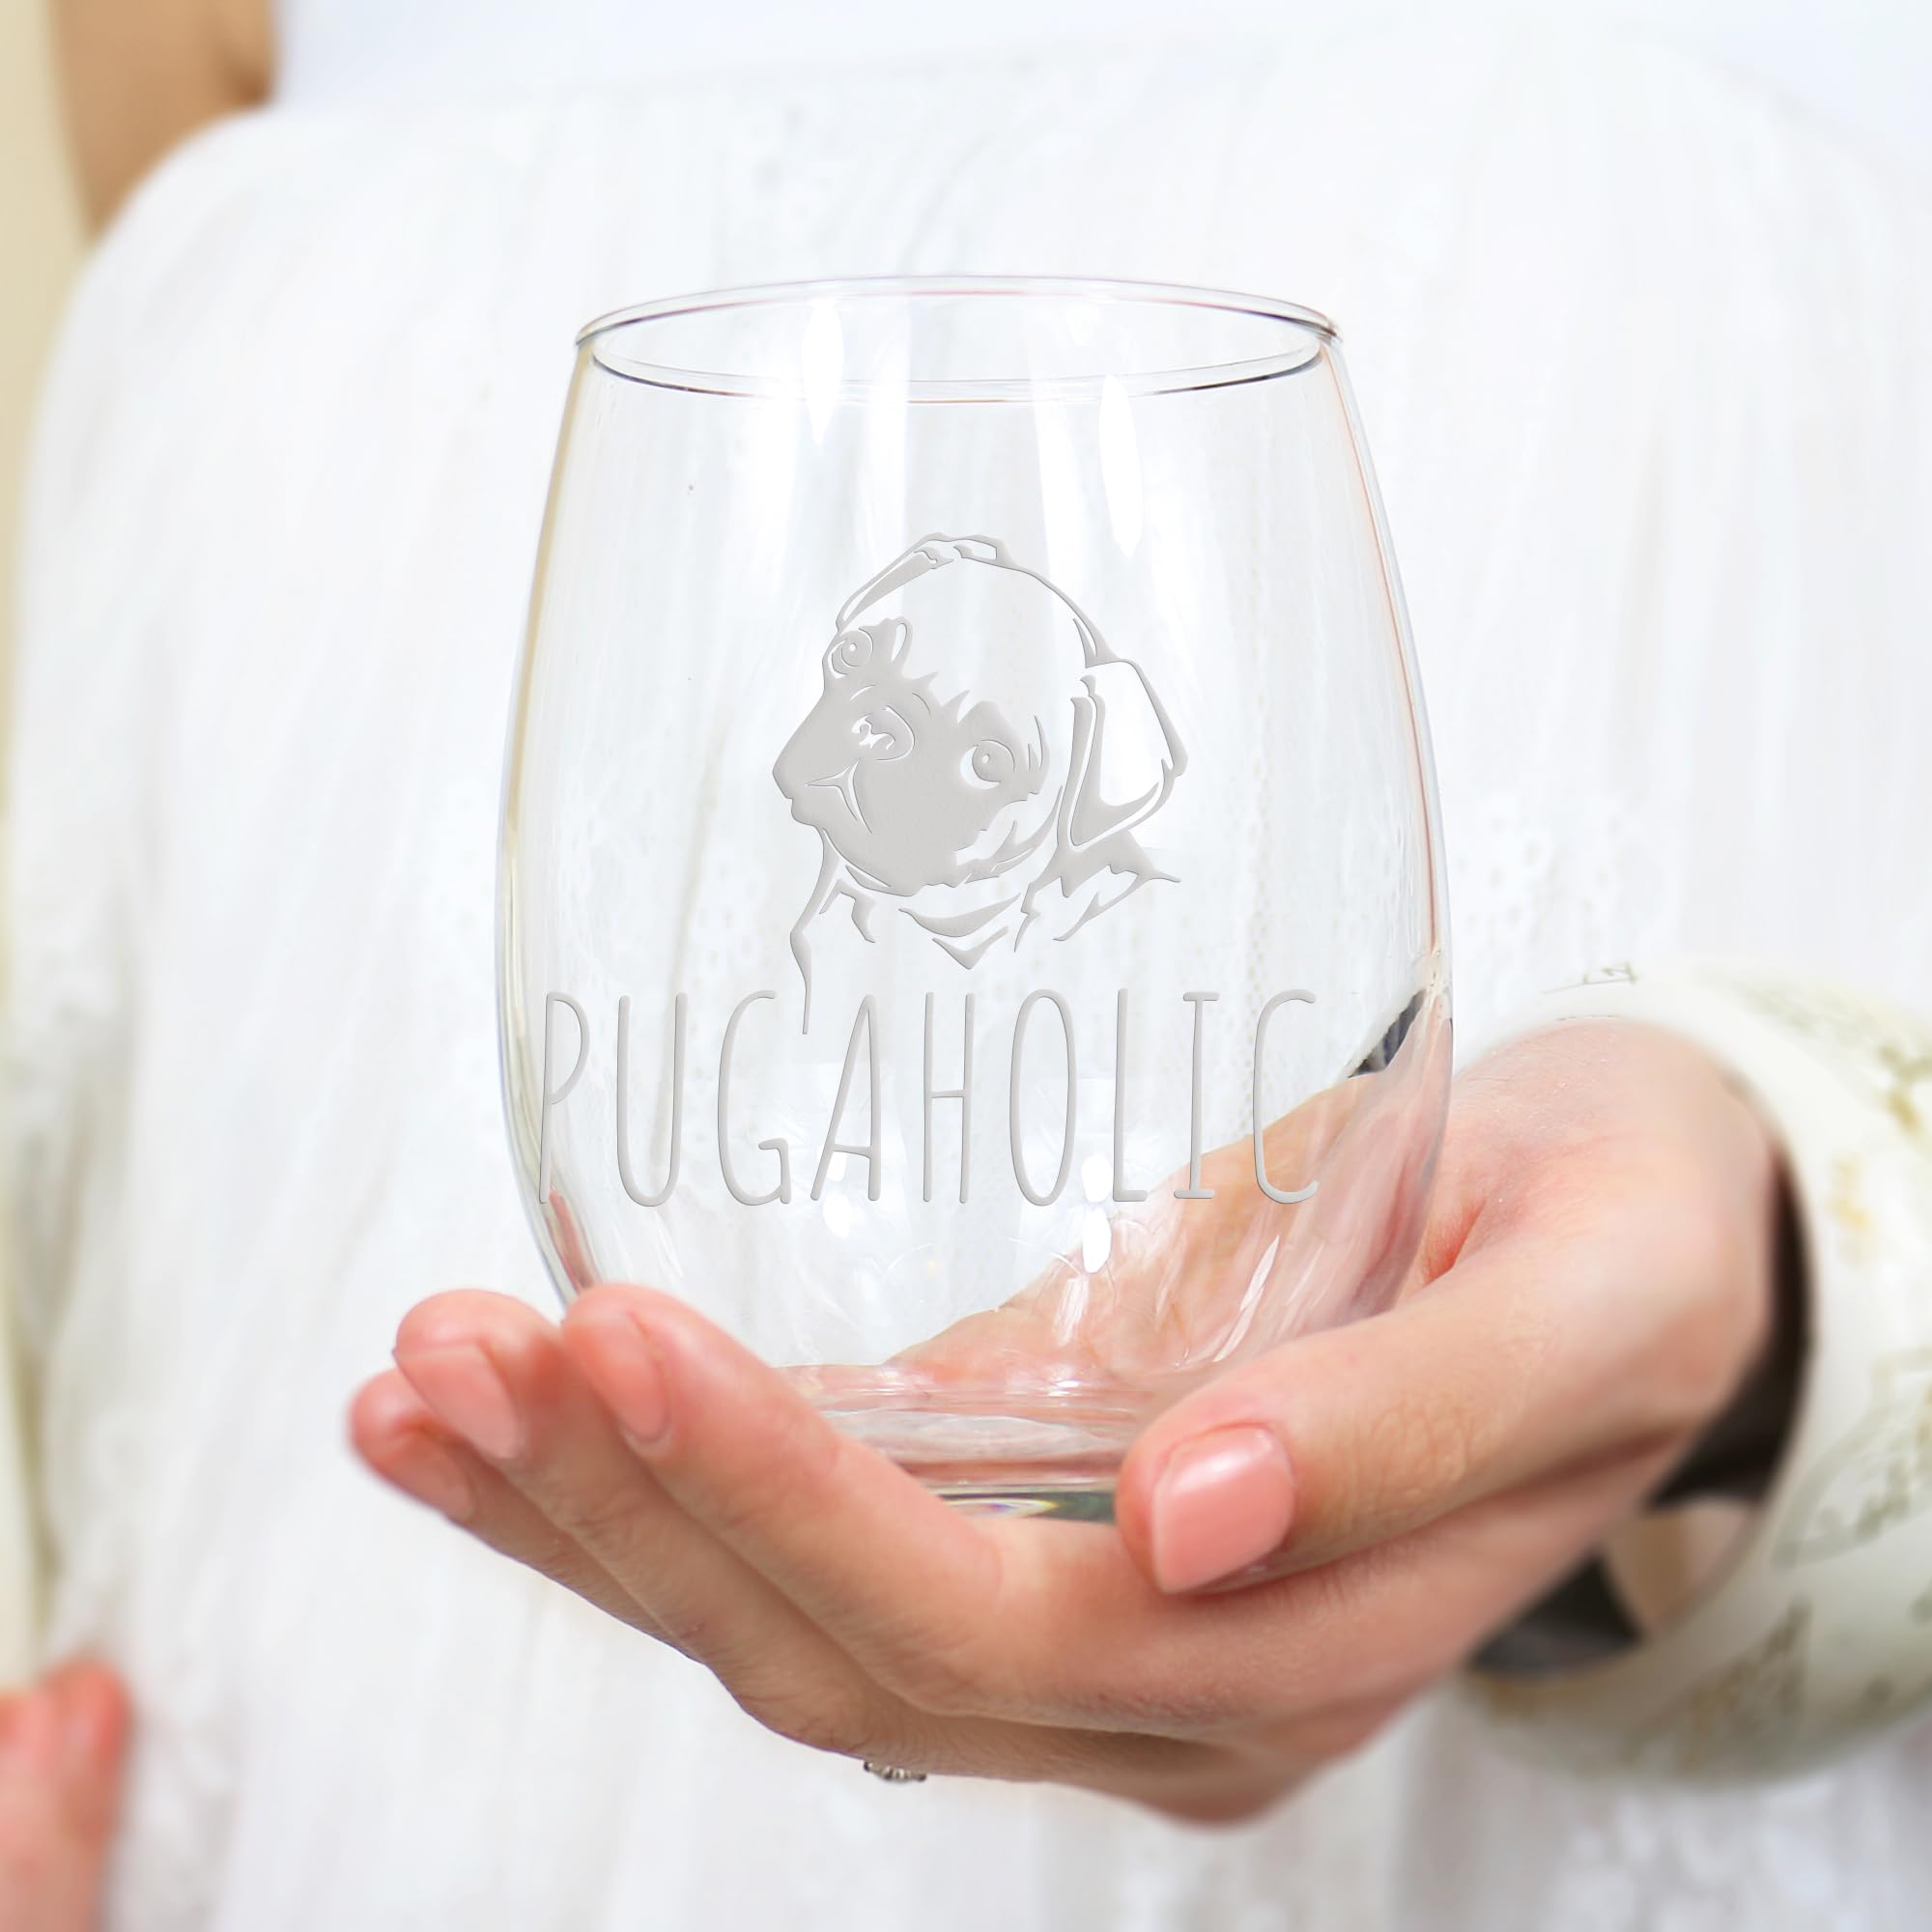 Pugaholic Pug Stemless Wine Glass - Pug Wine Glass, Pug Mom, Pugaholic, Pug Gift, Pug Lover, Pug Cup, Fun Wine Glass, Pet Wine Glass